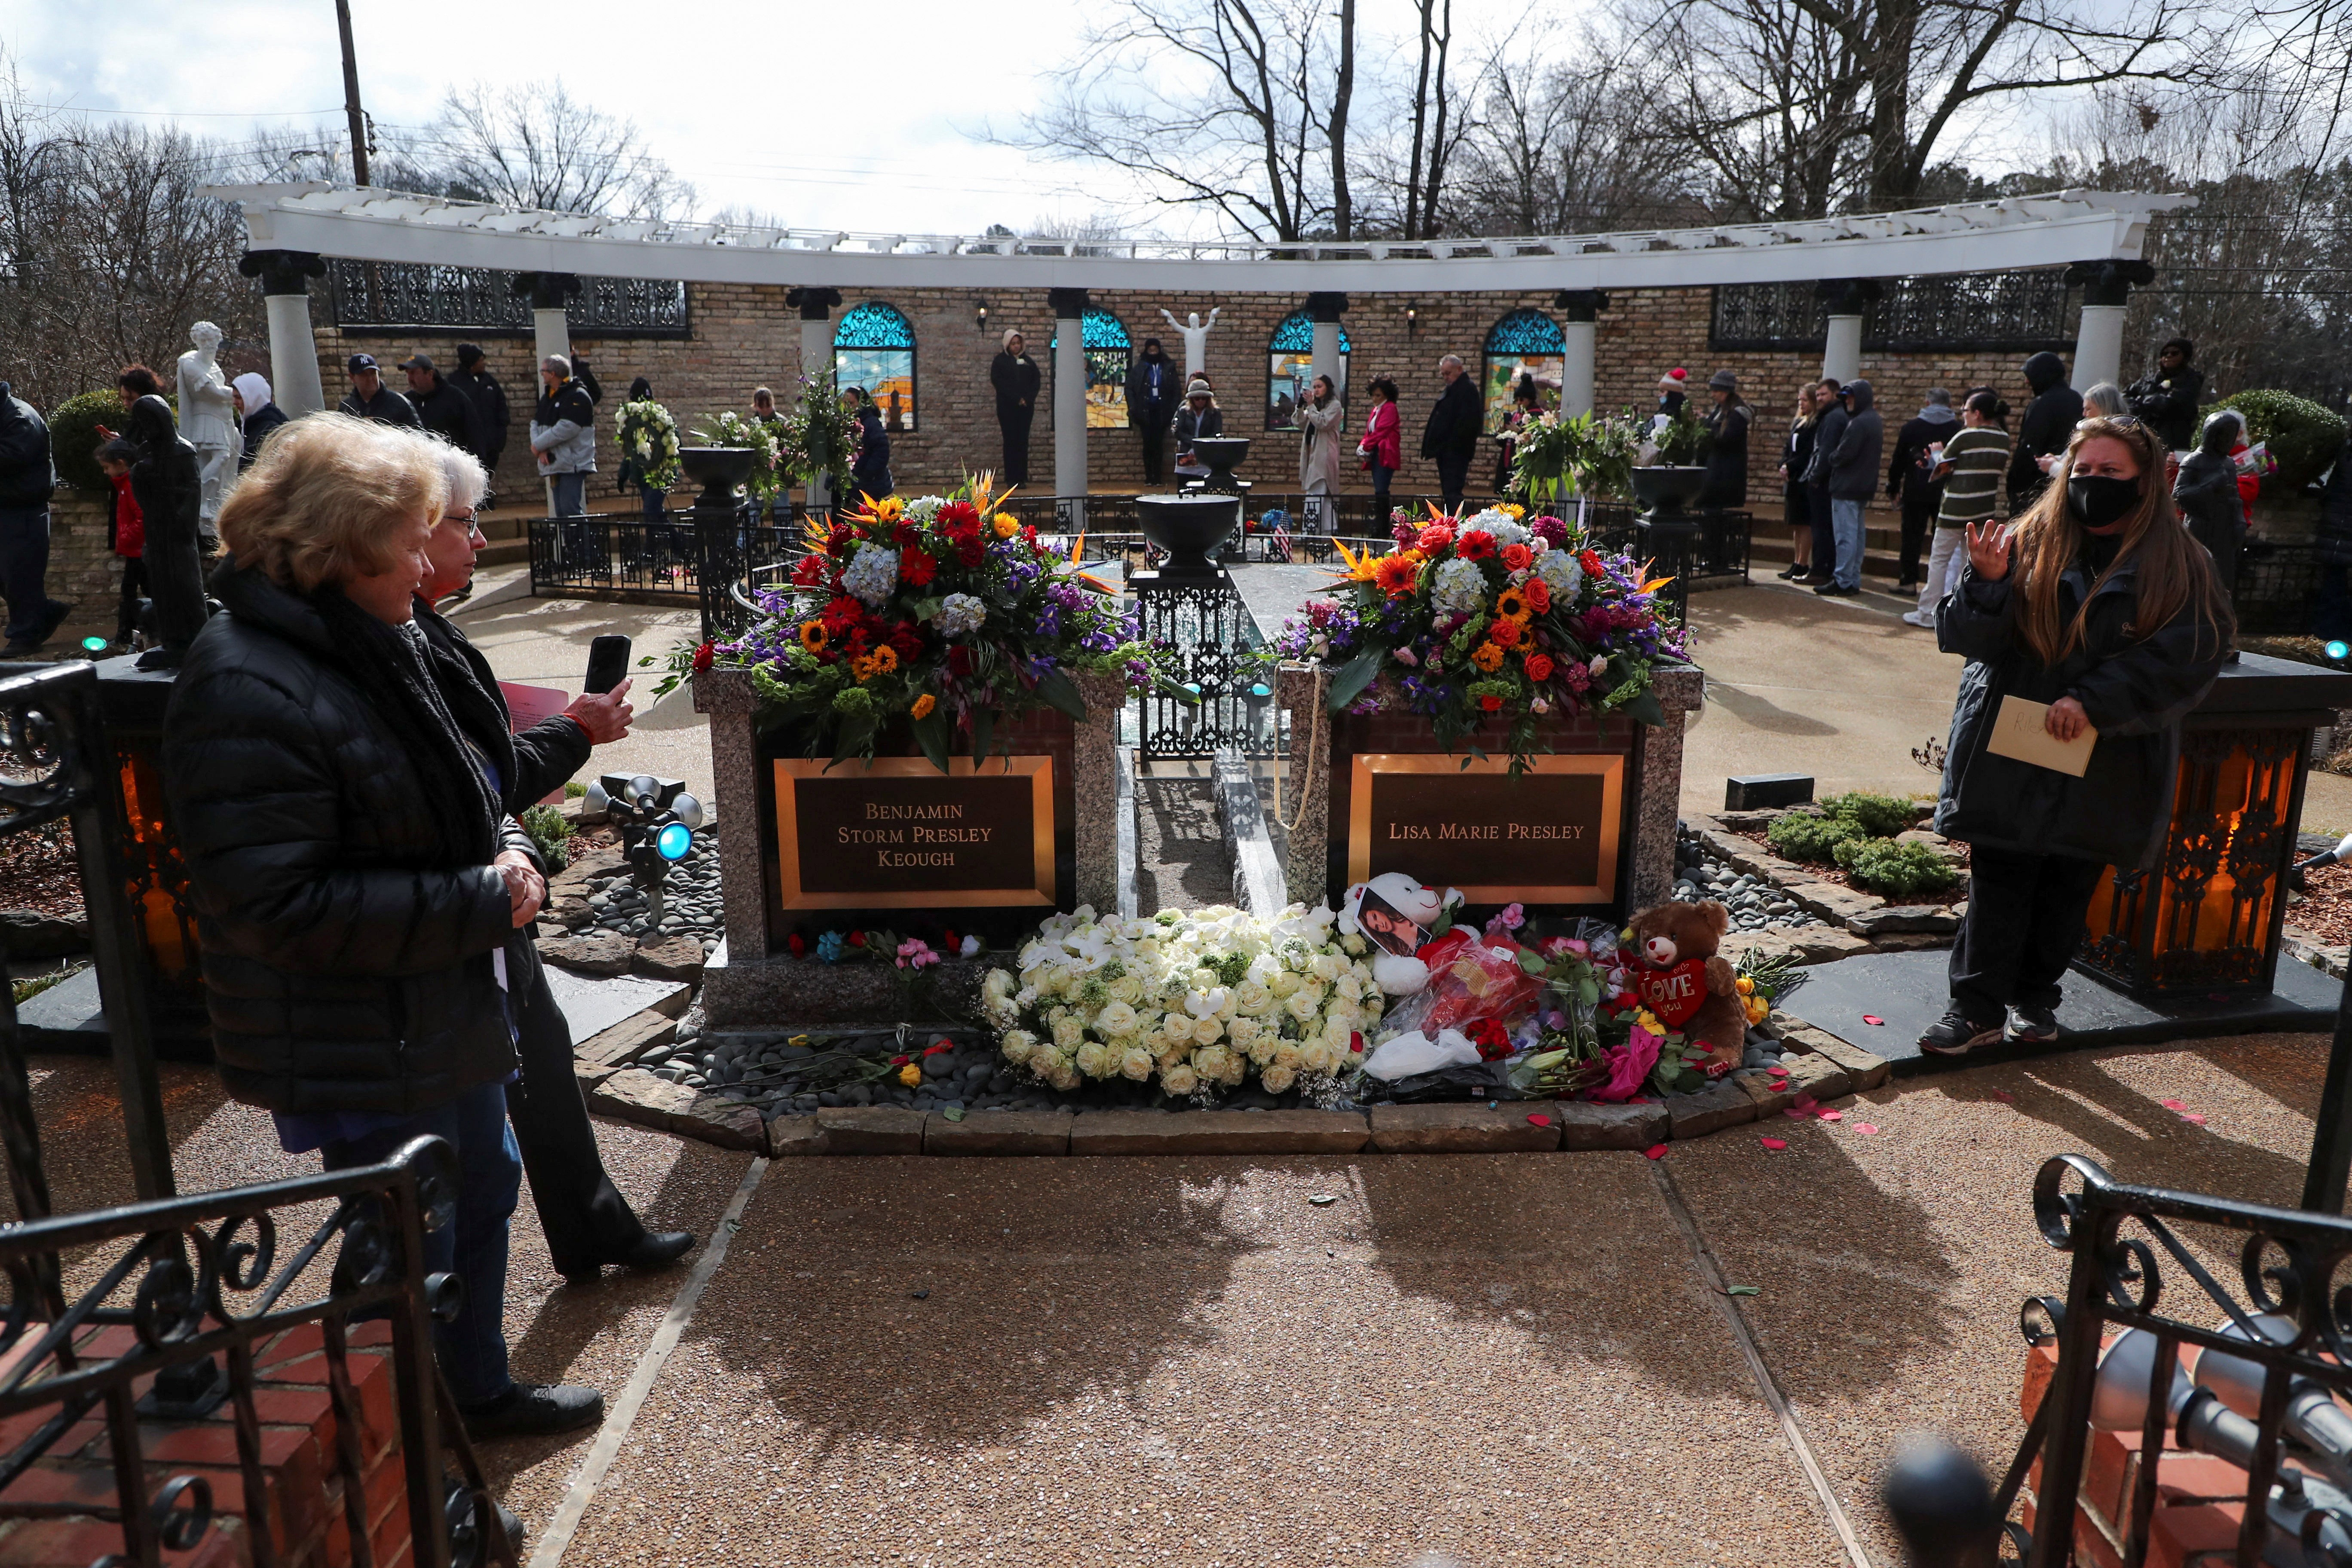 Los fanáticos de Lisa Marie visitan su tumba en Graceland, junto a la de Benjamin, el padre de Elvis REUTERS/Nikki Boertman